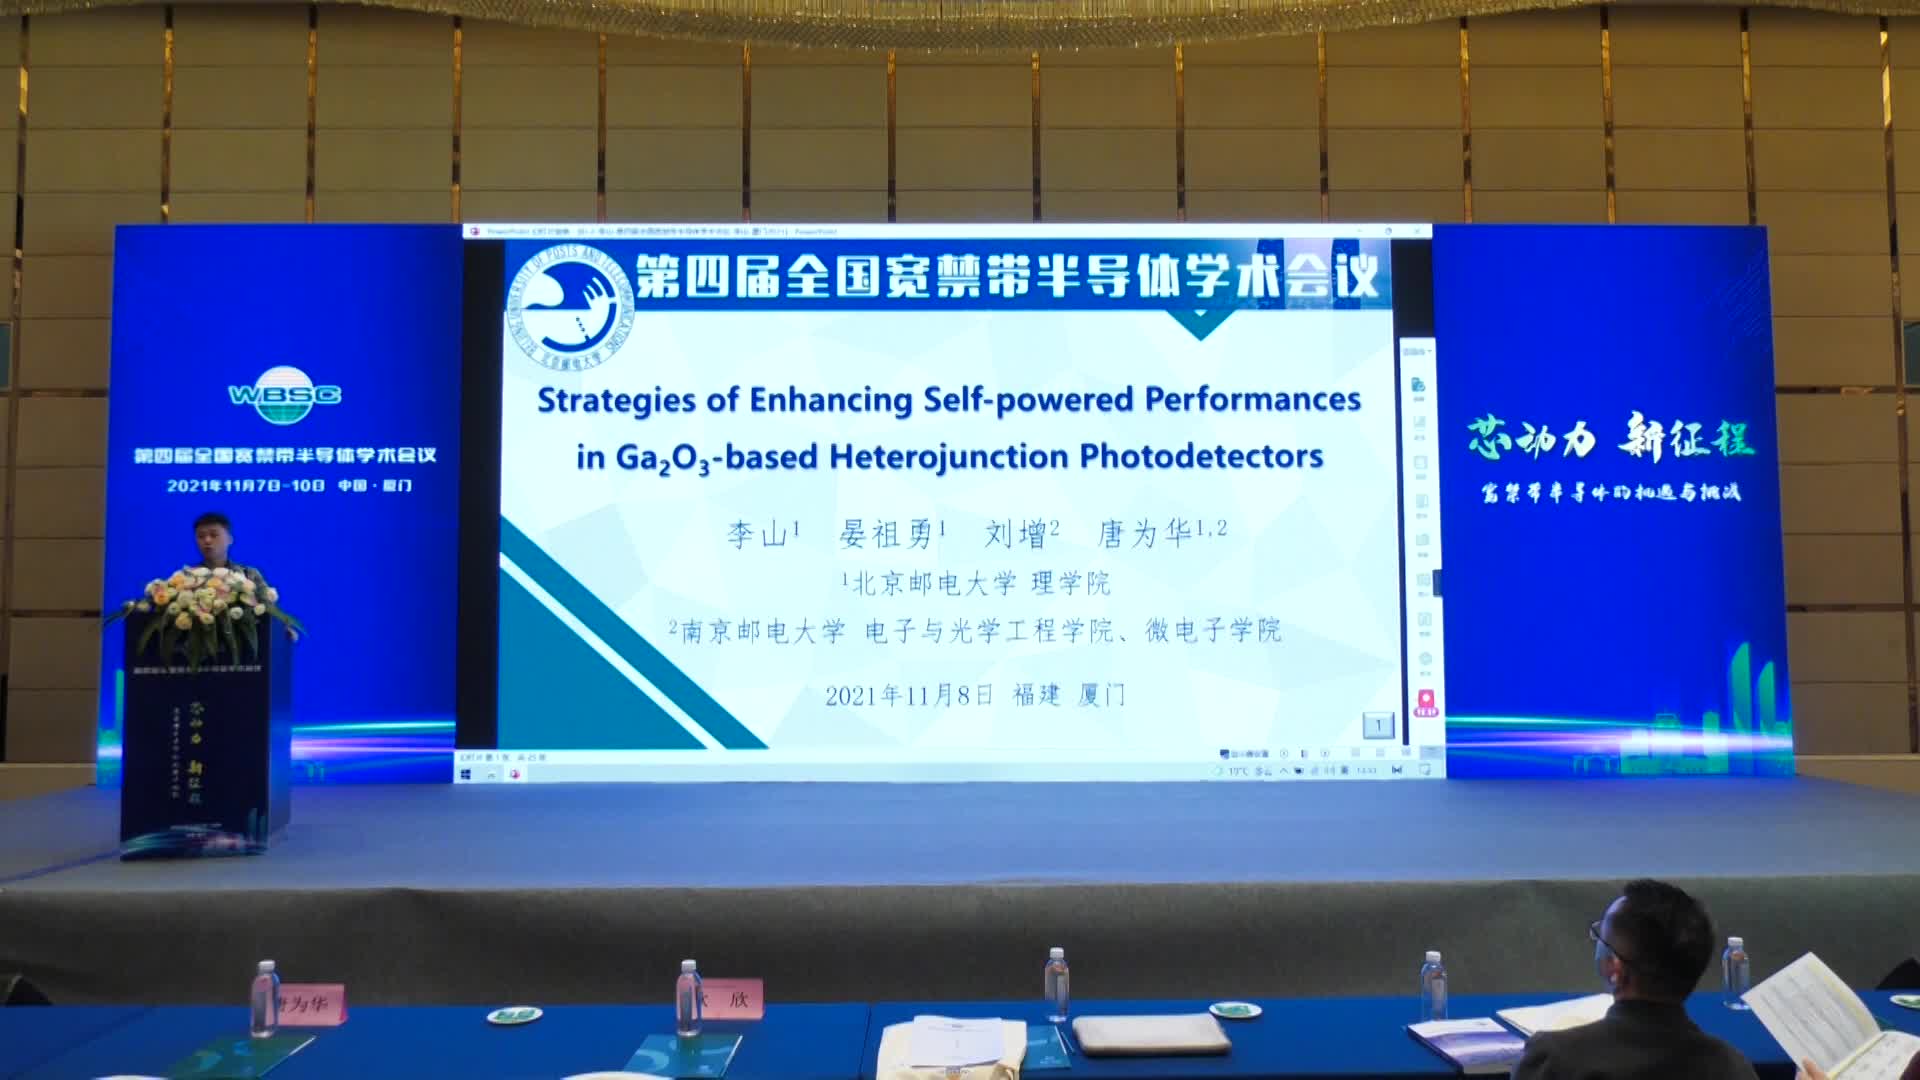 刘增：Strategies of Enhancing Self-powered Performances in Ga2O3-based Heterojunction Photodetectors